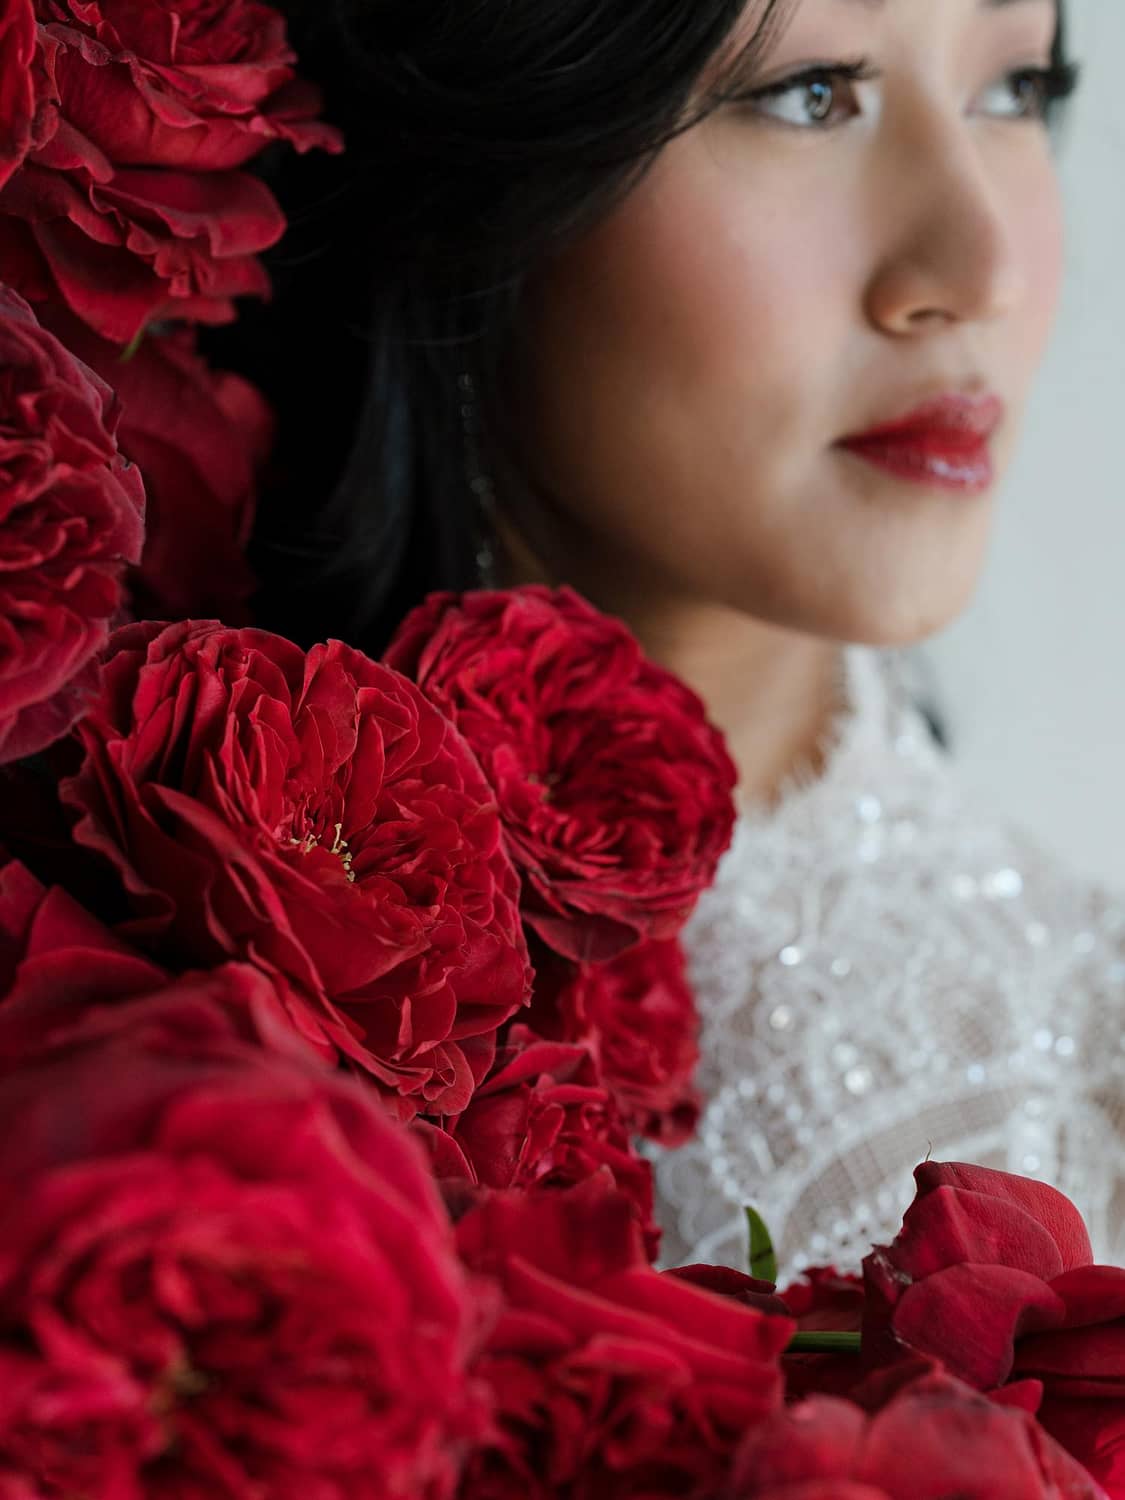 العروس مع الورد الأحمر